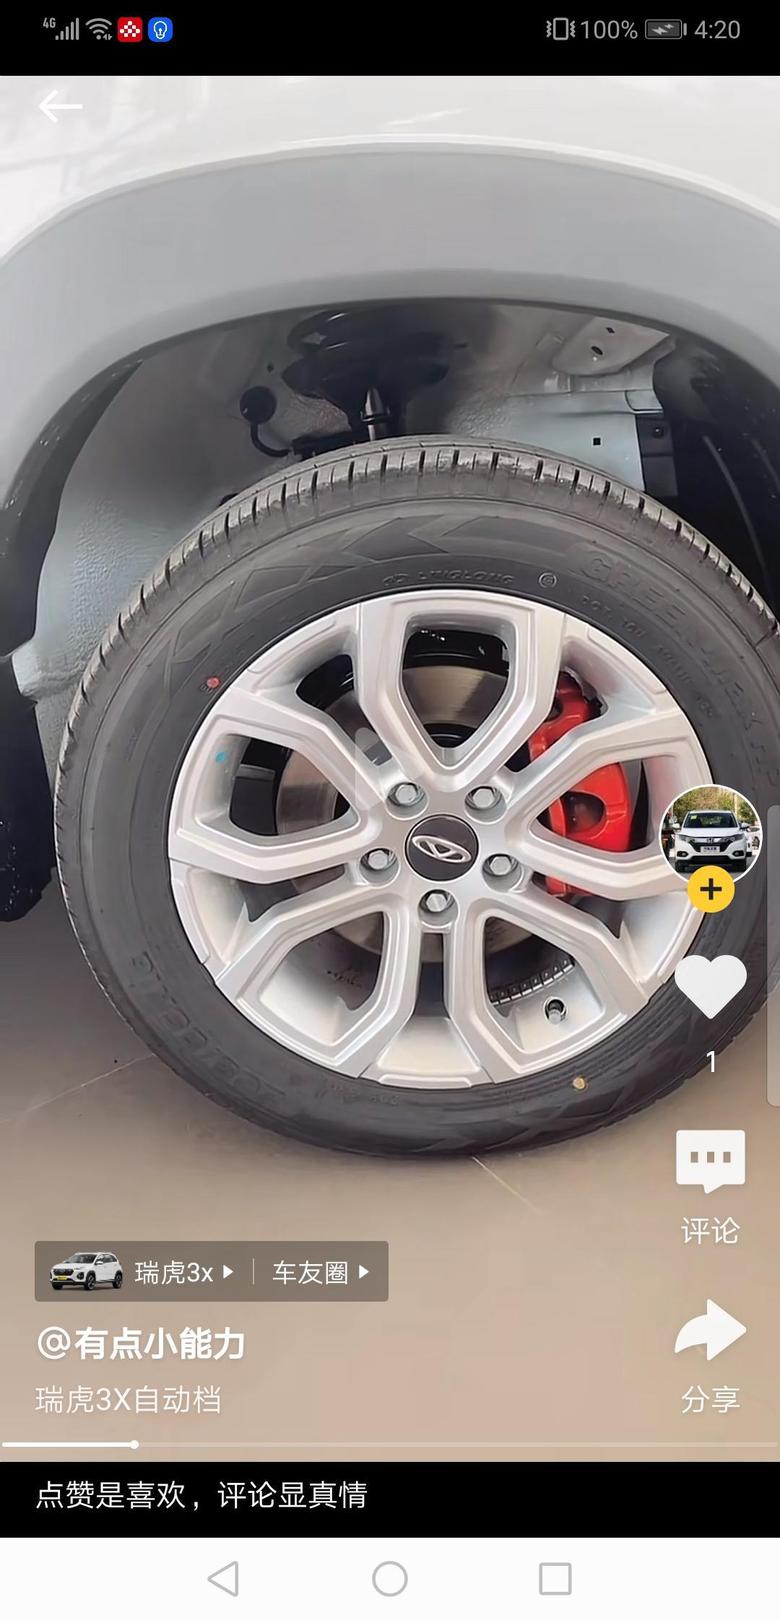 看着轮胎周围直接就是车身框架，行驶中轮胎溅上去的石子和雨水，时间久了会不会引起生锈。所以瑞虎3x需要加装翼子板内衬吗？